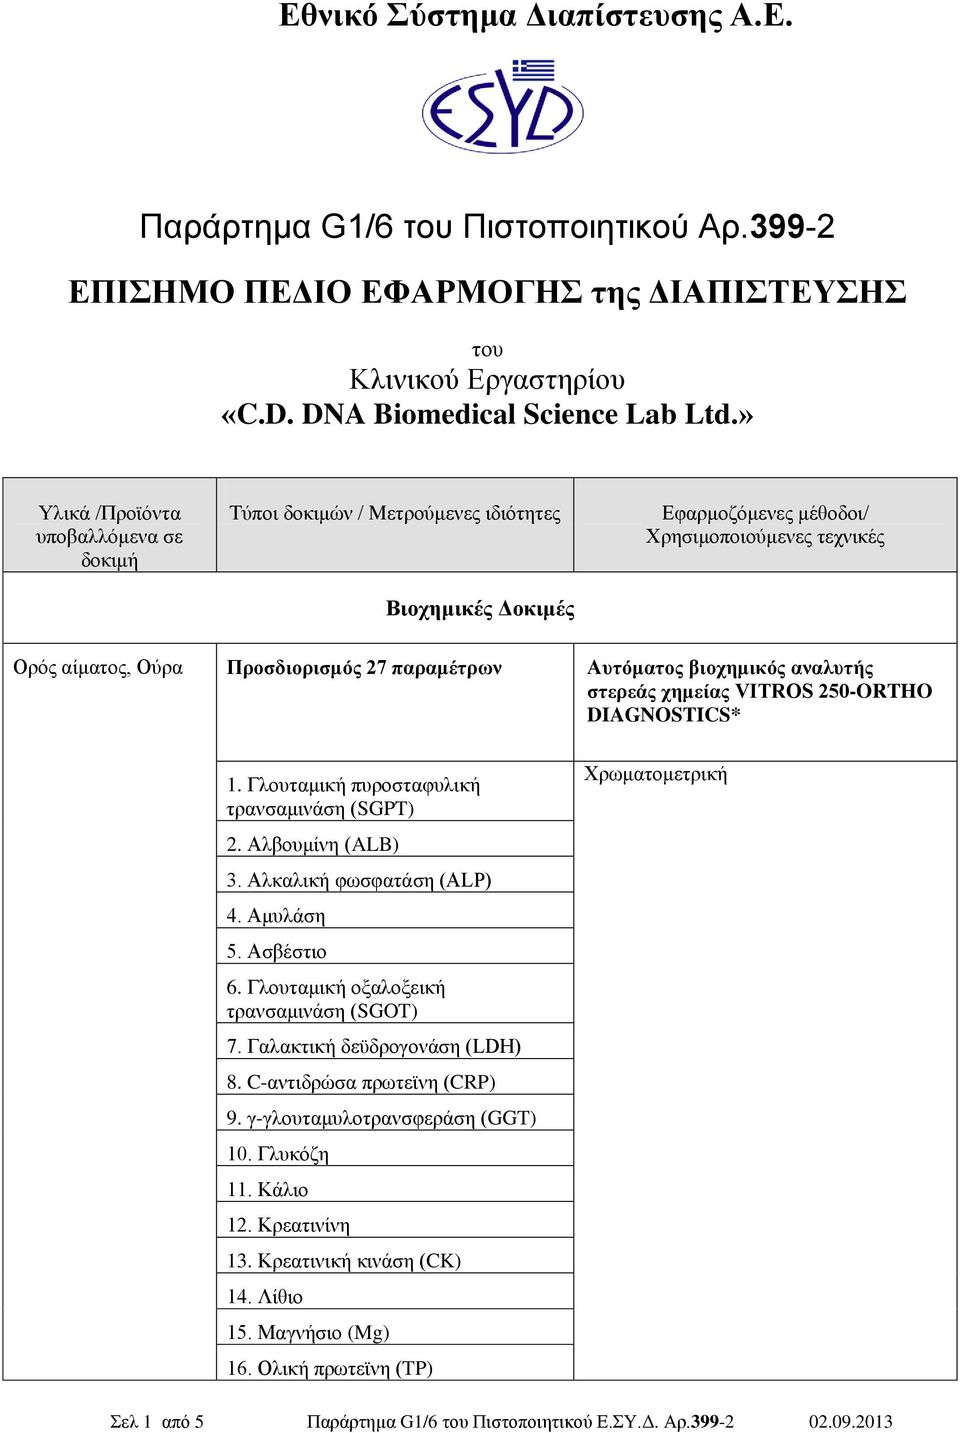 Αλβουμίνη (ALB) 3. Αλκαλική φωσφατάση (ALP) 4. Αμυλάση 5. Ασβέστιο 6. Γλουταμική οξαλοξεική τρανσαμινάση (SGOT) 7. Γαλακτική δεϋδρογονάση (LDH) 8. C-αντιδρώσα πρωτεϊνη (CRP) 9.